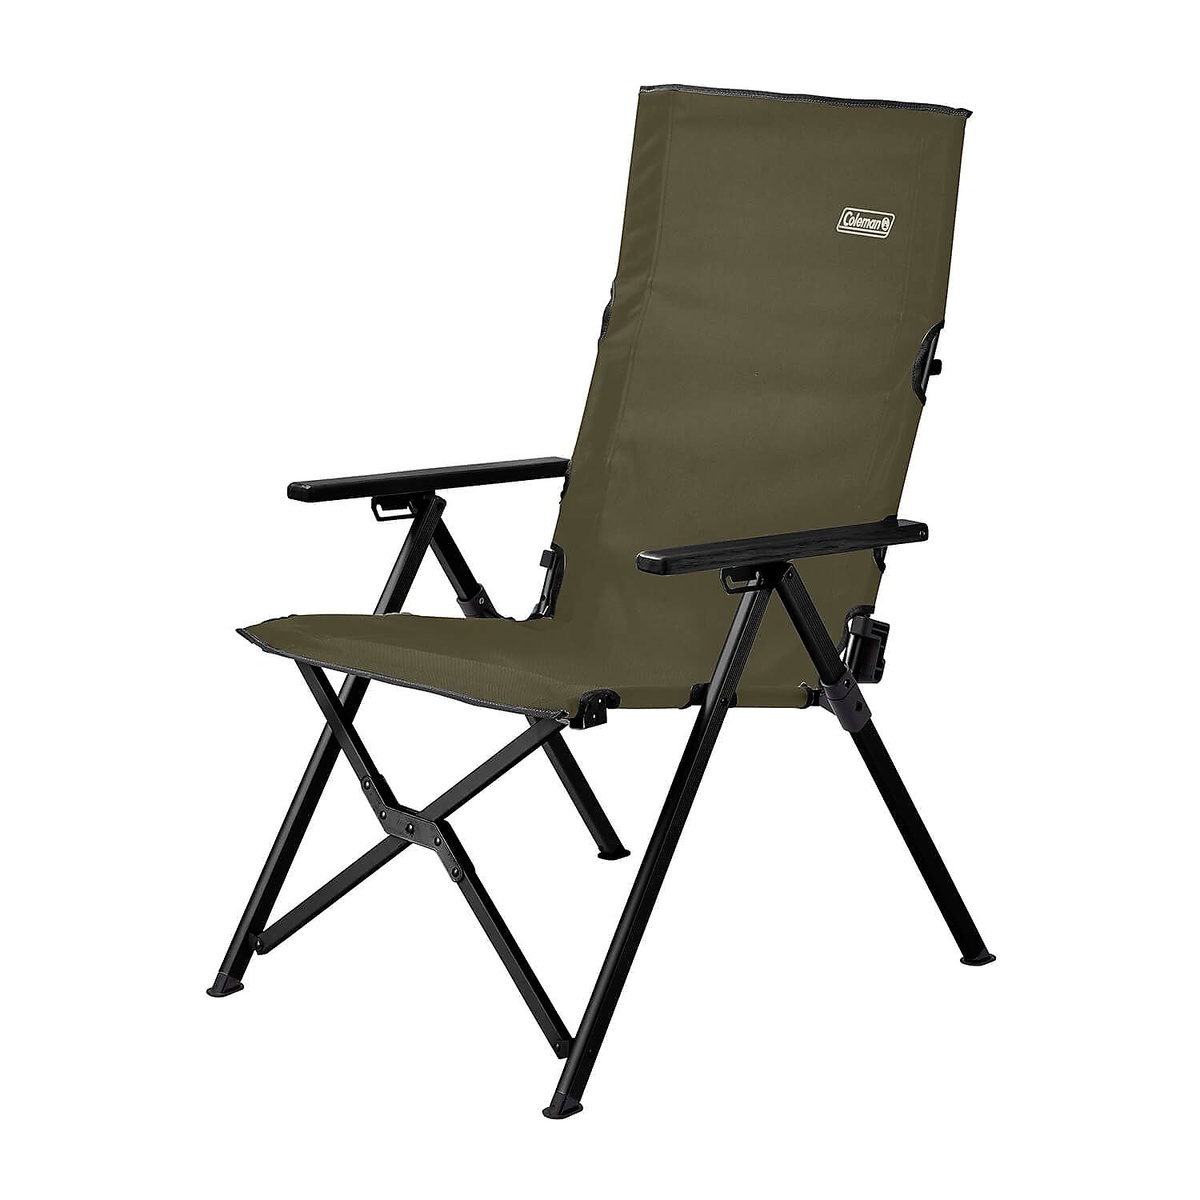 コールマン キャンプ用品 ファミリーチェア 年中無休 椅子 驚きの価格が実現！ レイチェア COLEMAN 2000033808 オリーブ